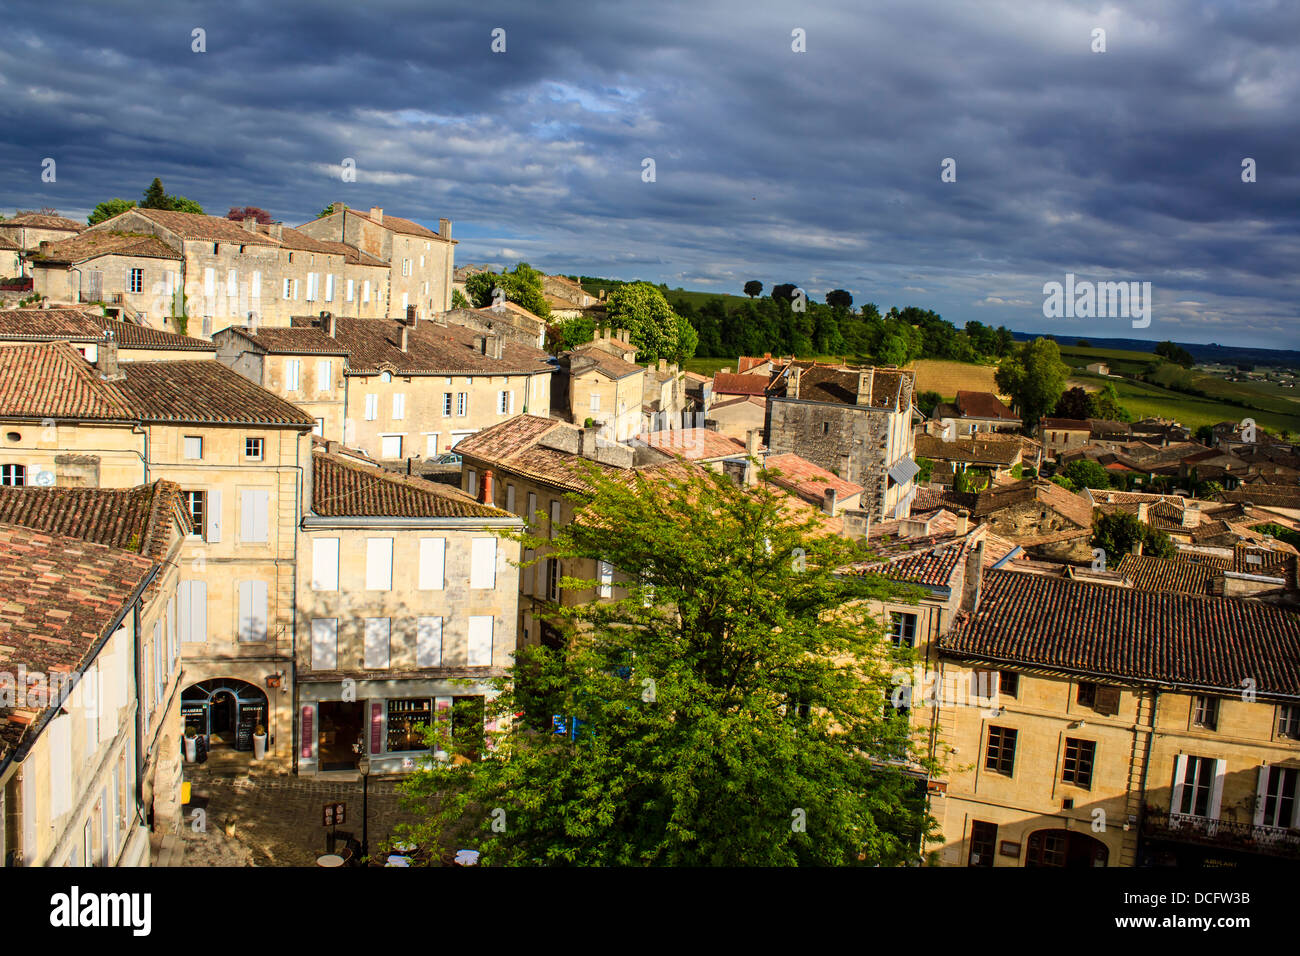 Vue panoramique du village de Saint-Emilion, Bordeaux, France Banque D'Images